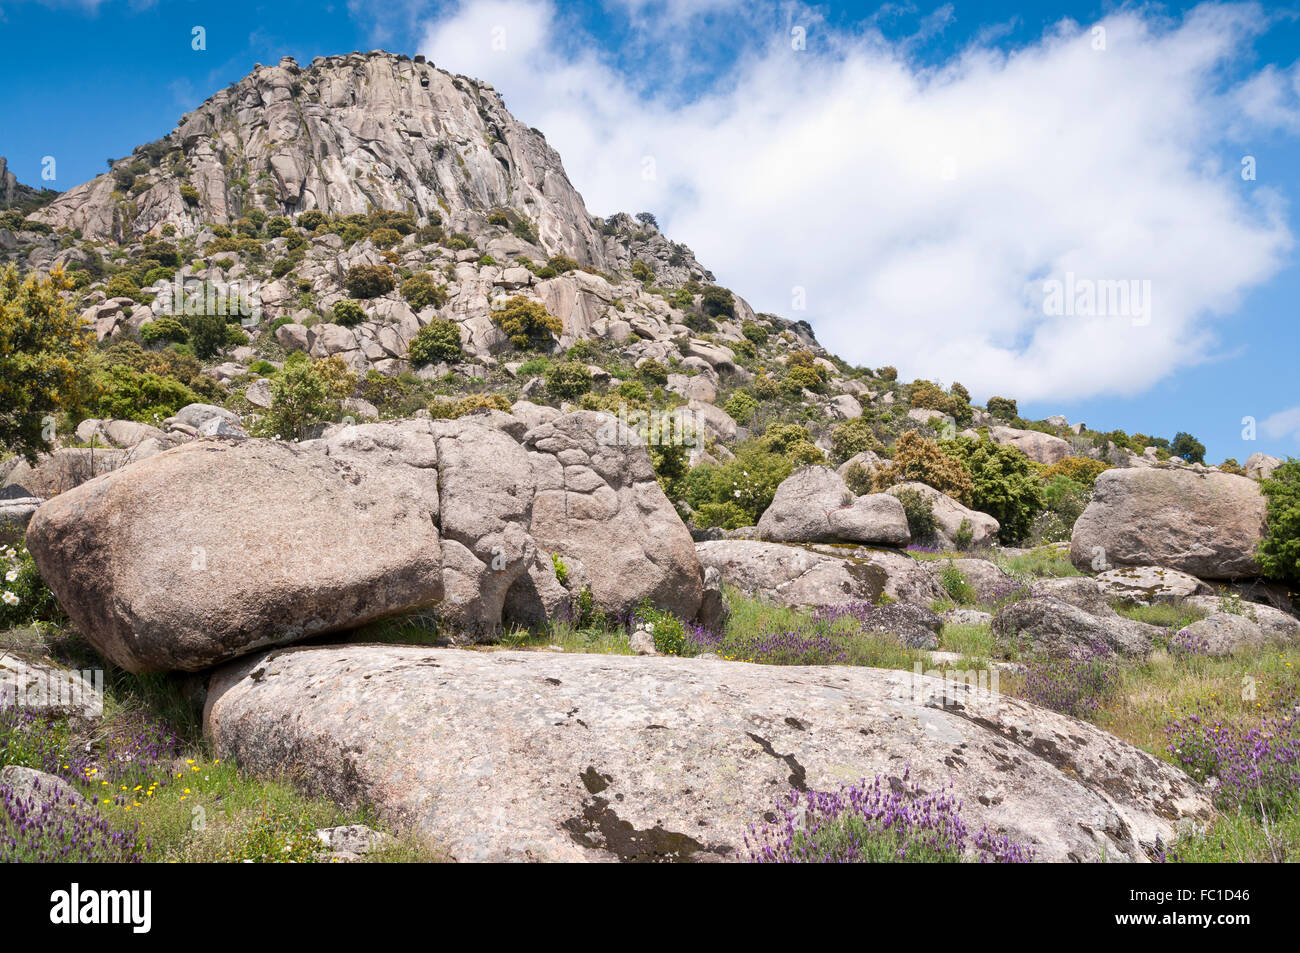 Views of Pico de la Miel (Honey Peak). It is a granite batholith located at  Sierra de la Cabrera, Madrid, Spain Stock Photo